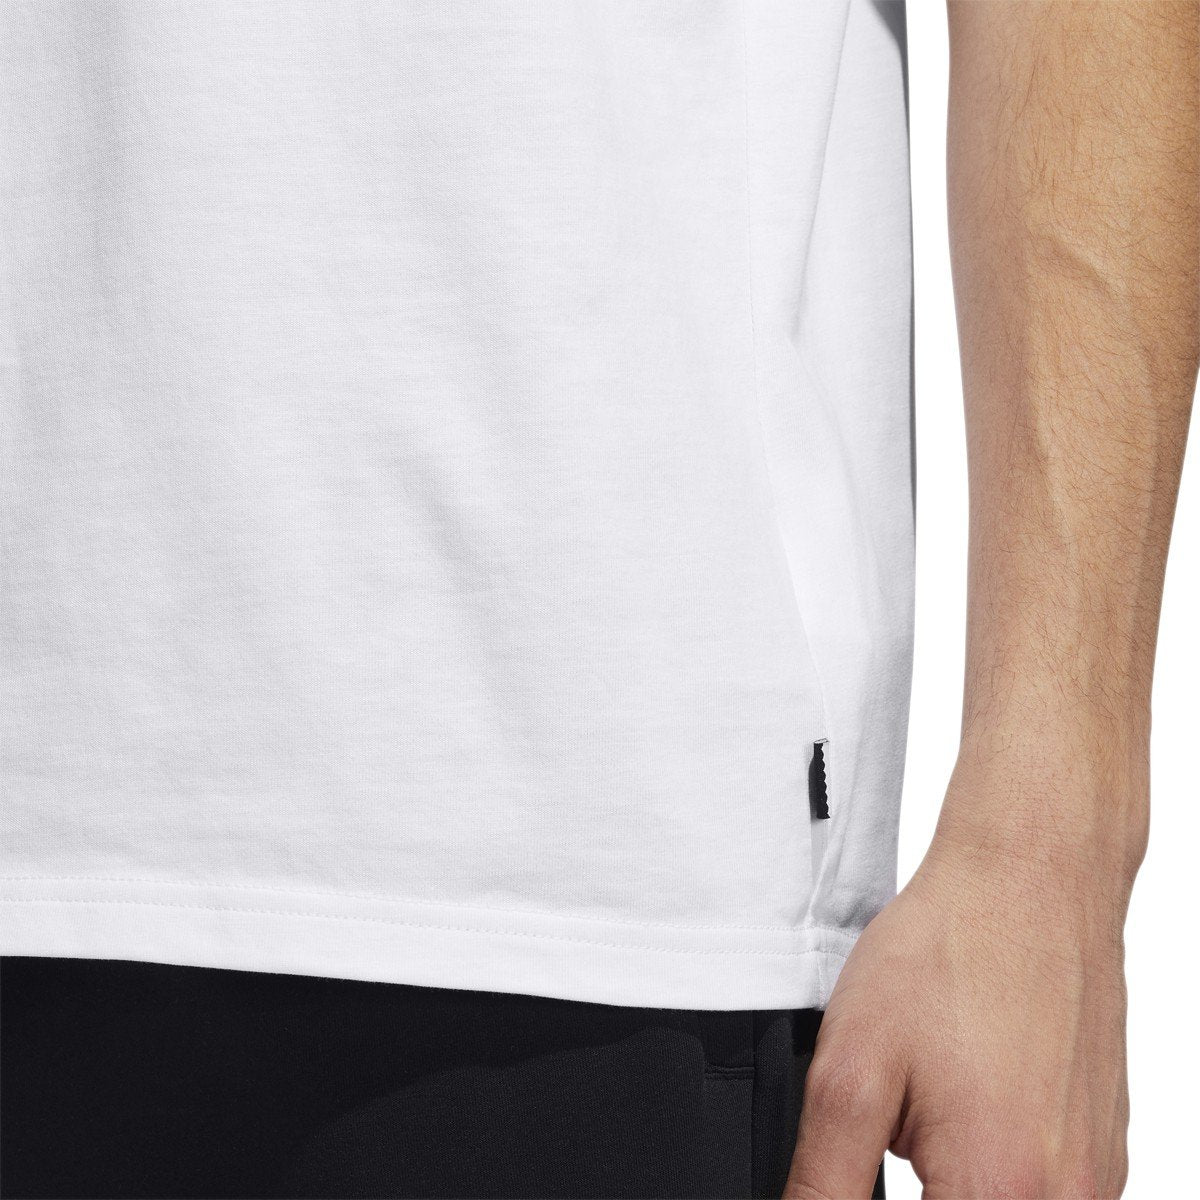 adidas-mens-solid-bb-t-shirt-ec7363